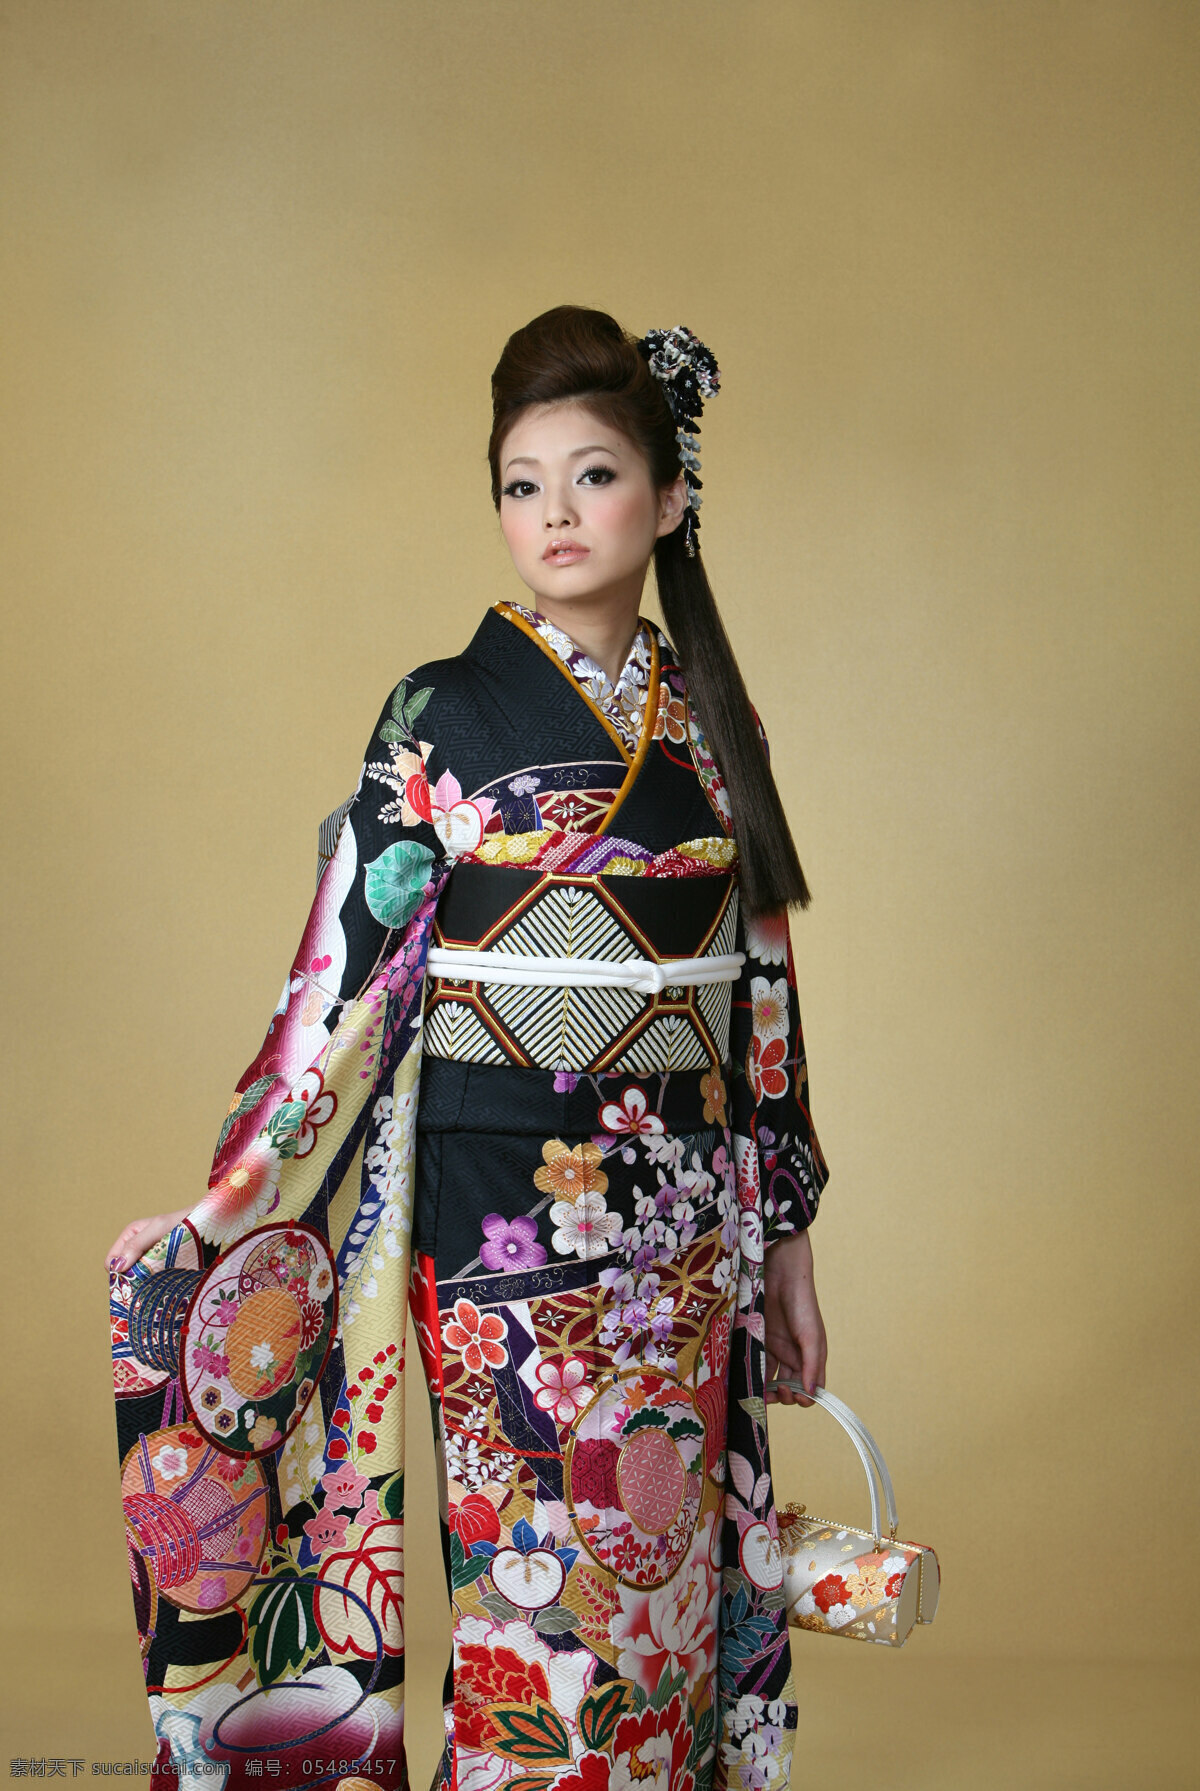 日本和服展示 日本 和服 展示 模特 女性 高清 女人 女性女人 人物图库